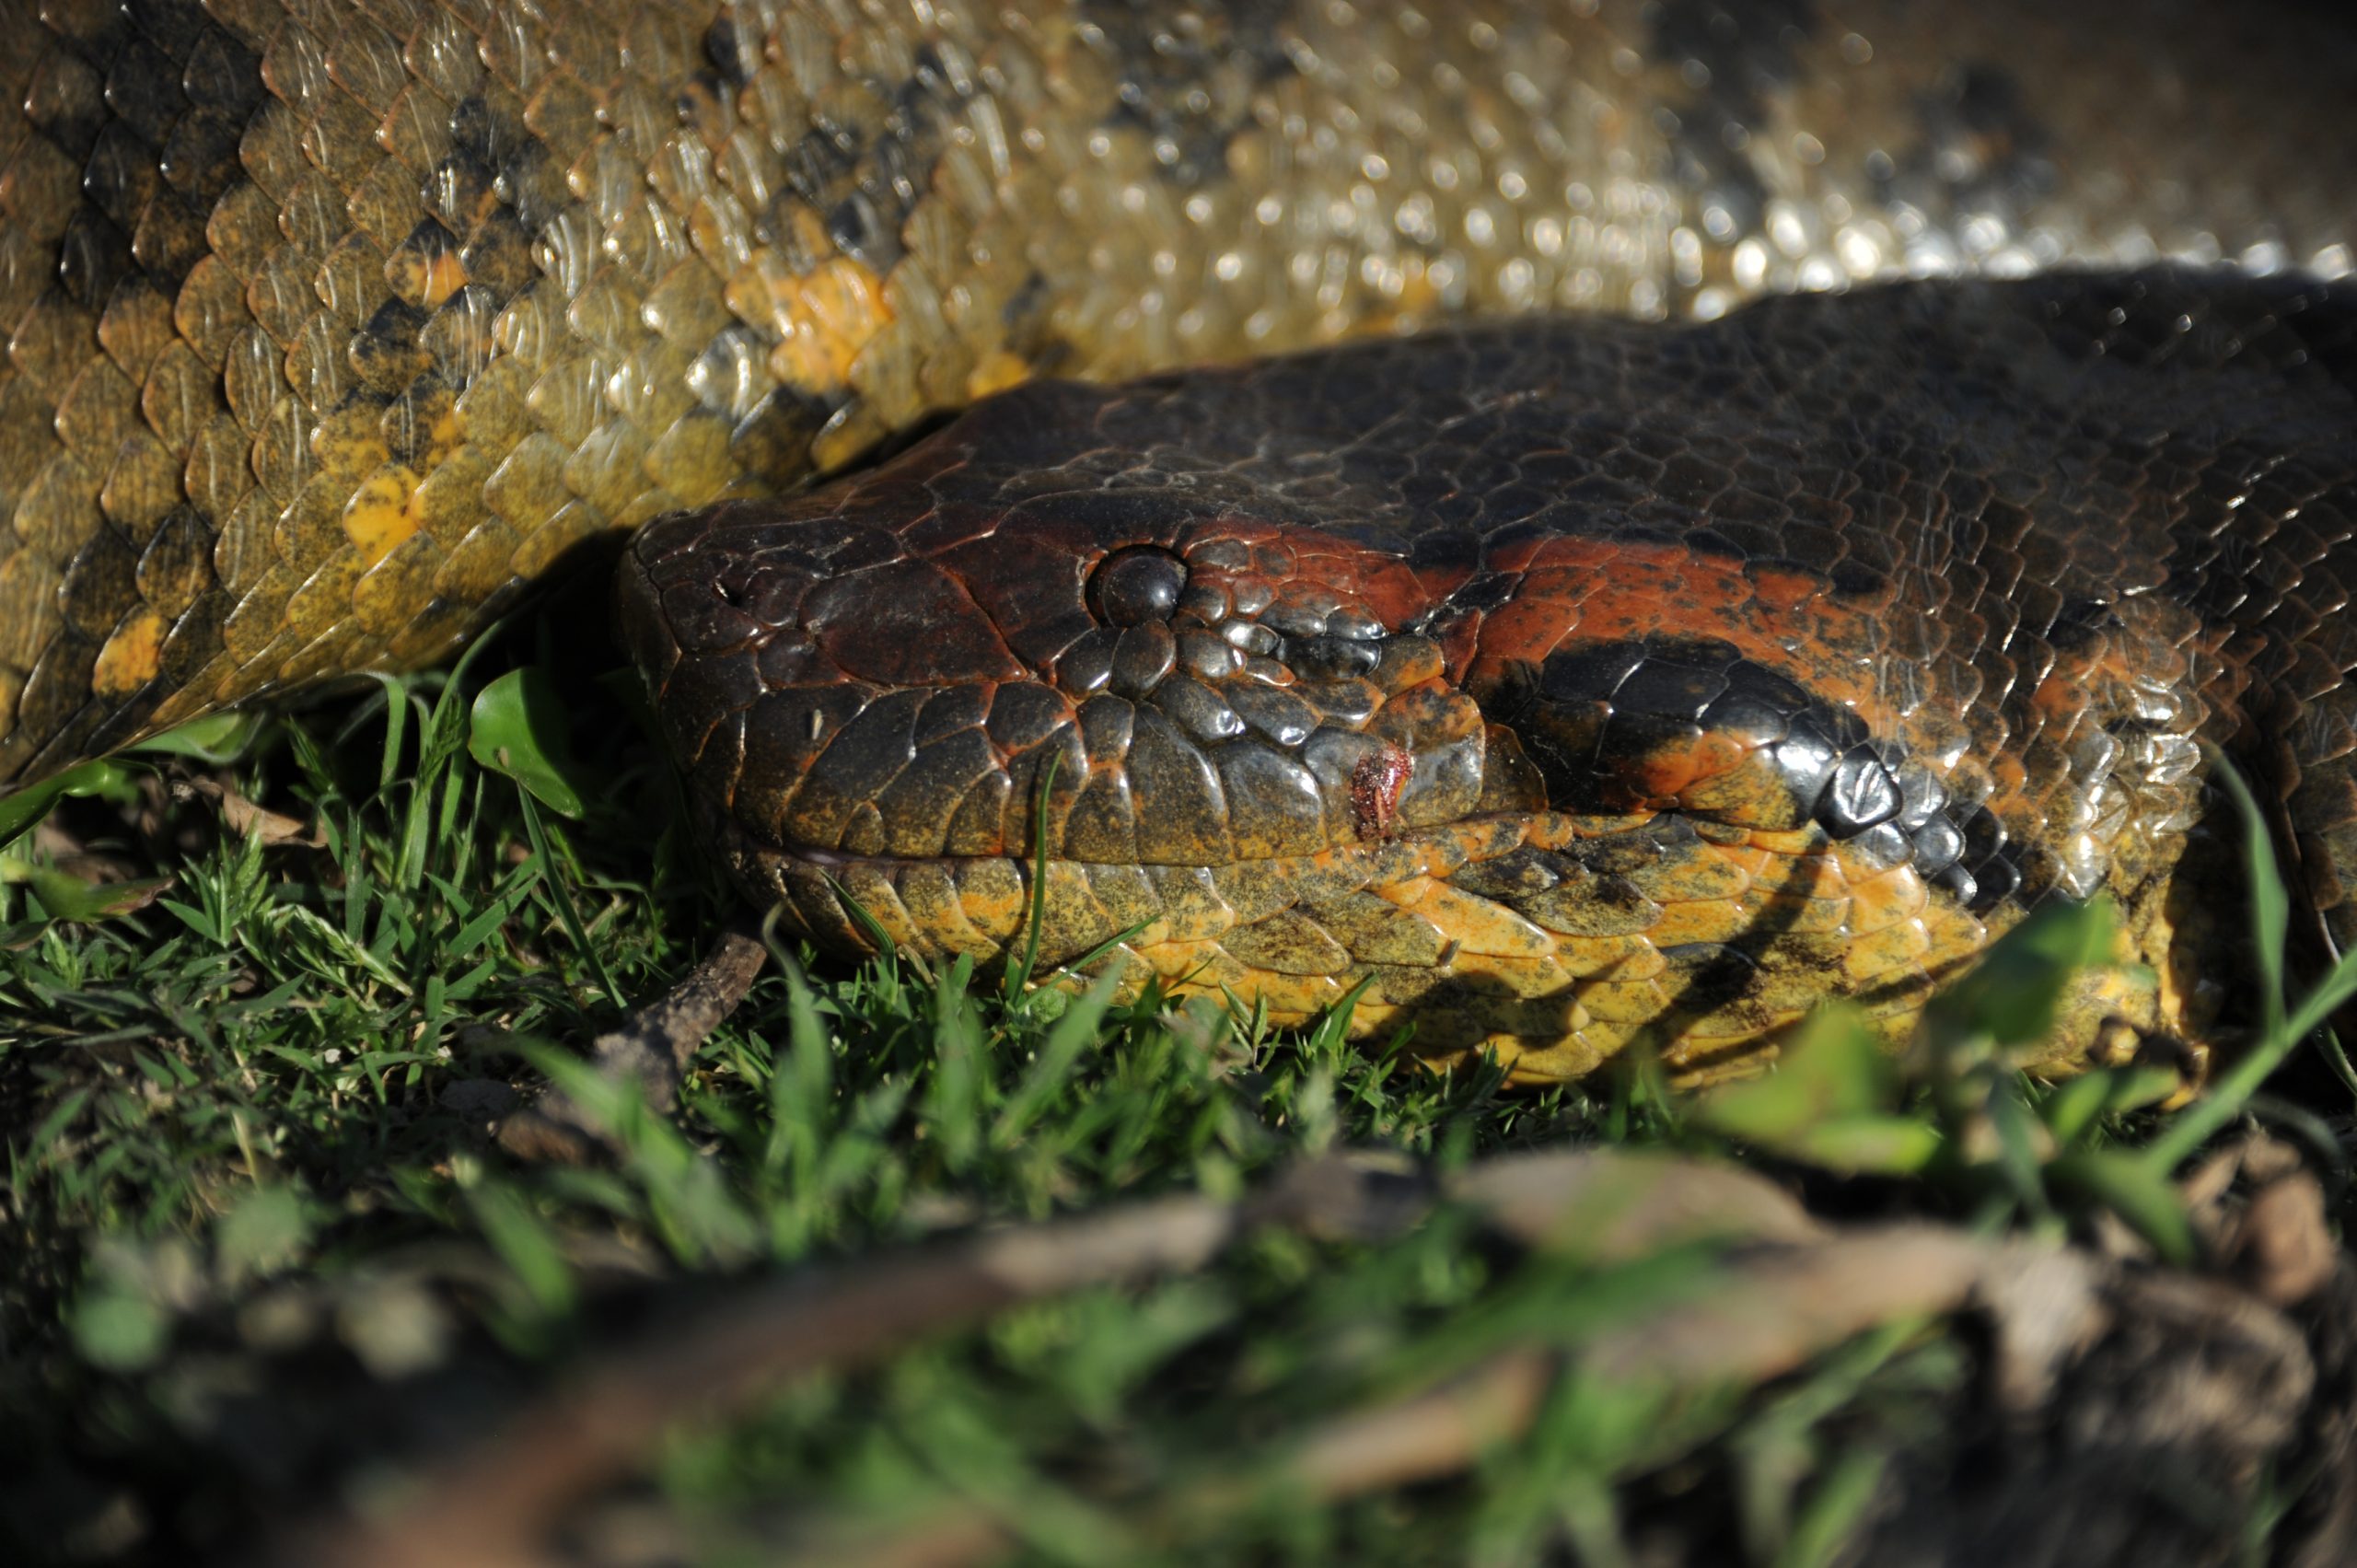 'La asombrosa longitud de 20 pies': los científicos han descubierto una nueva especie de serpiente gigante en el remoto Amazonas